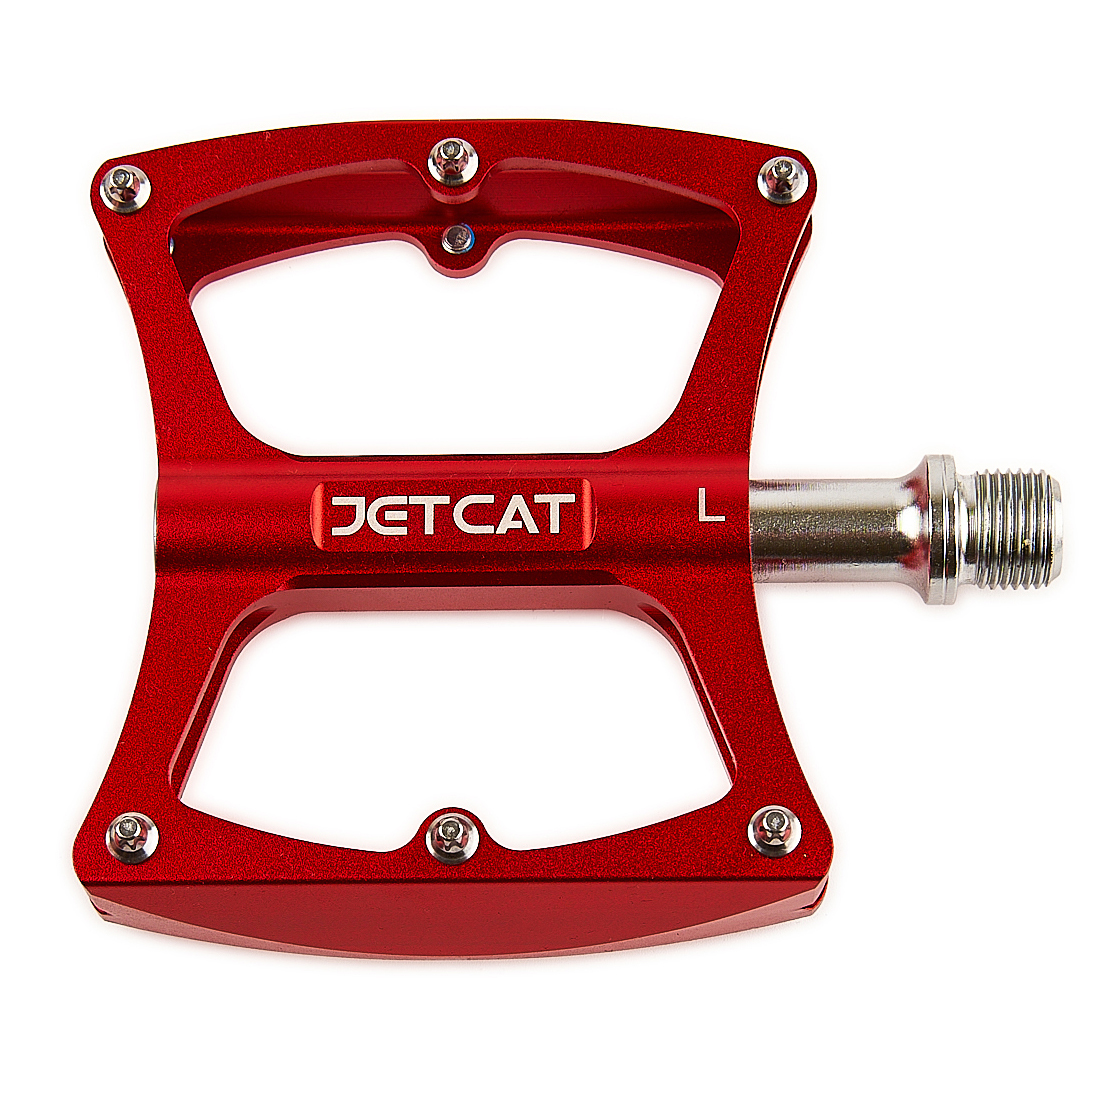 Педали велосипедные JETCAT Pro 100 алюминиевые красные